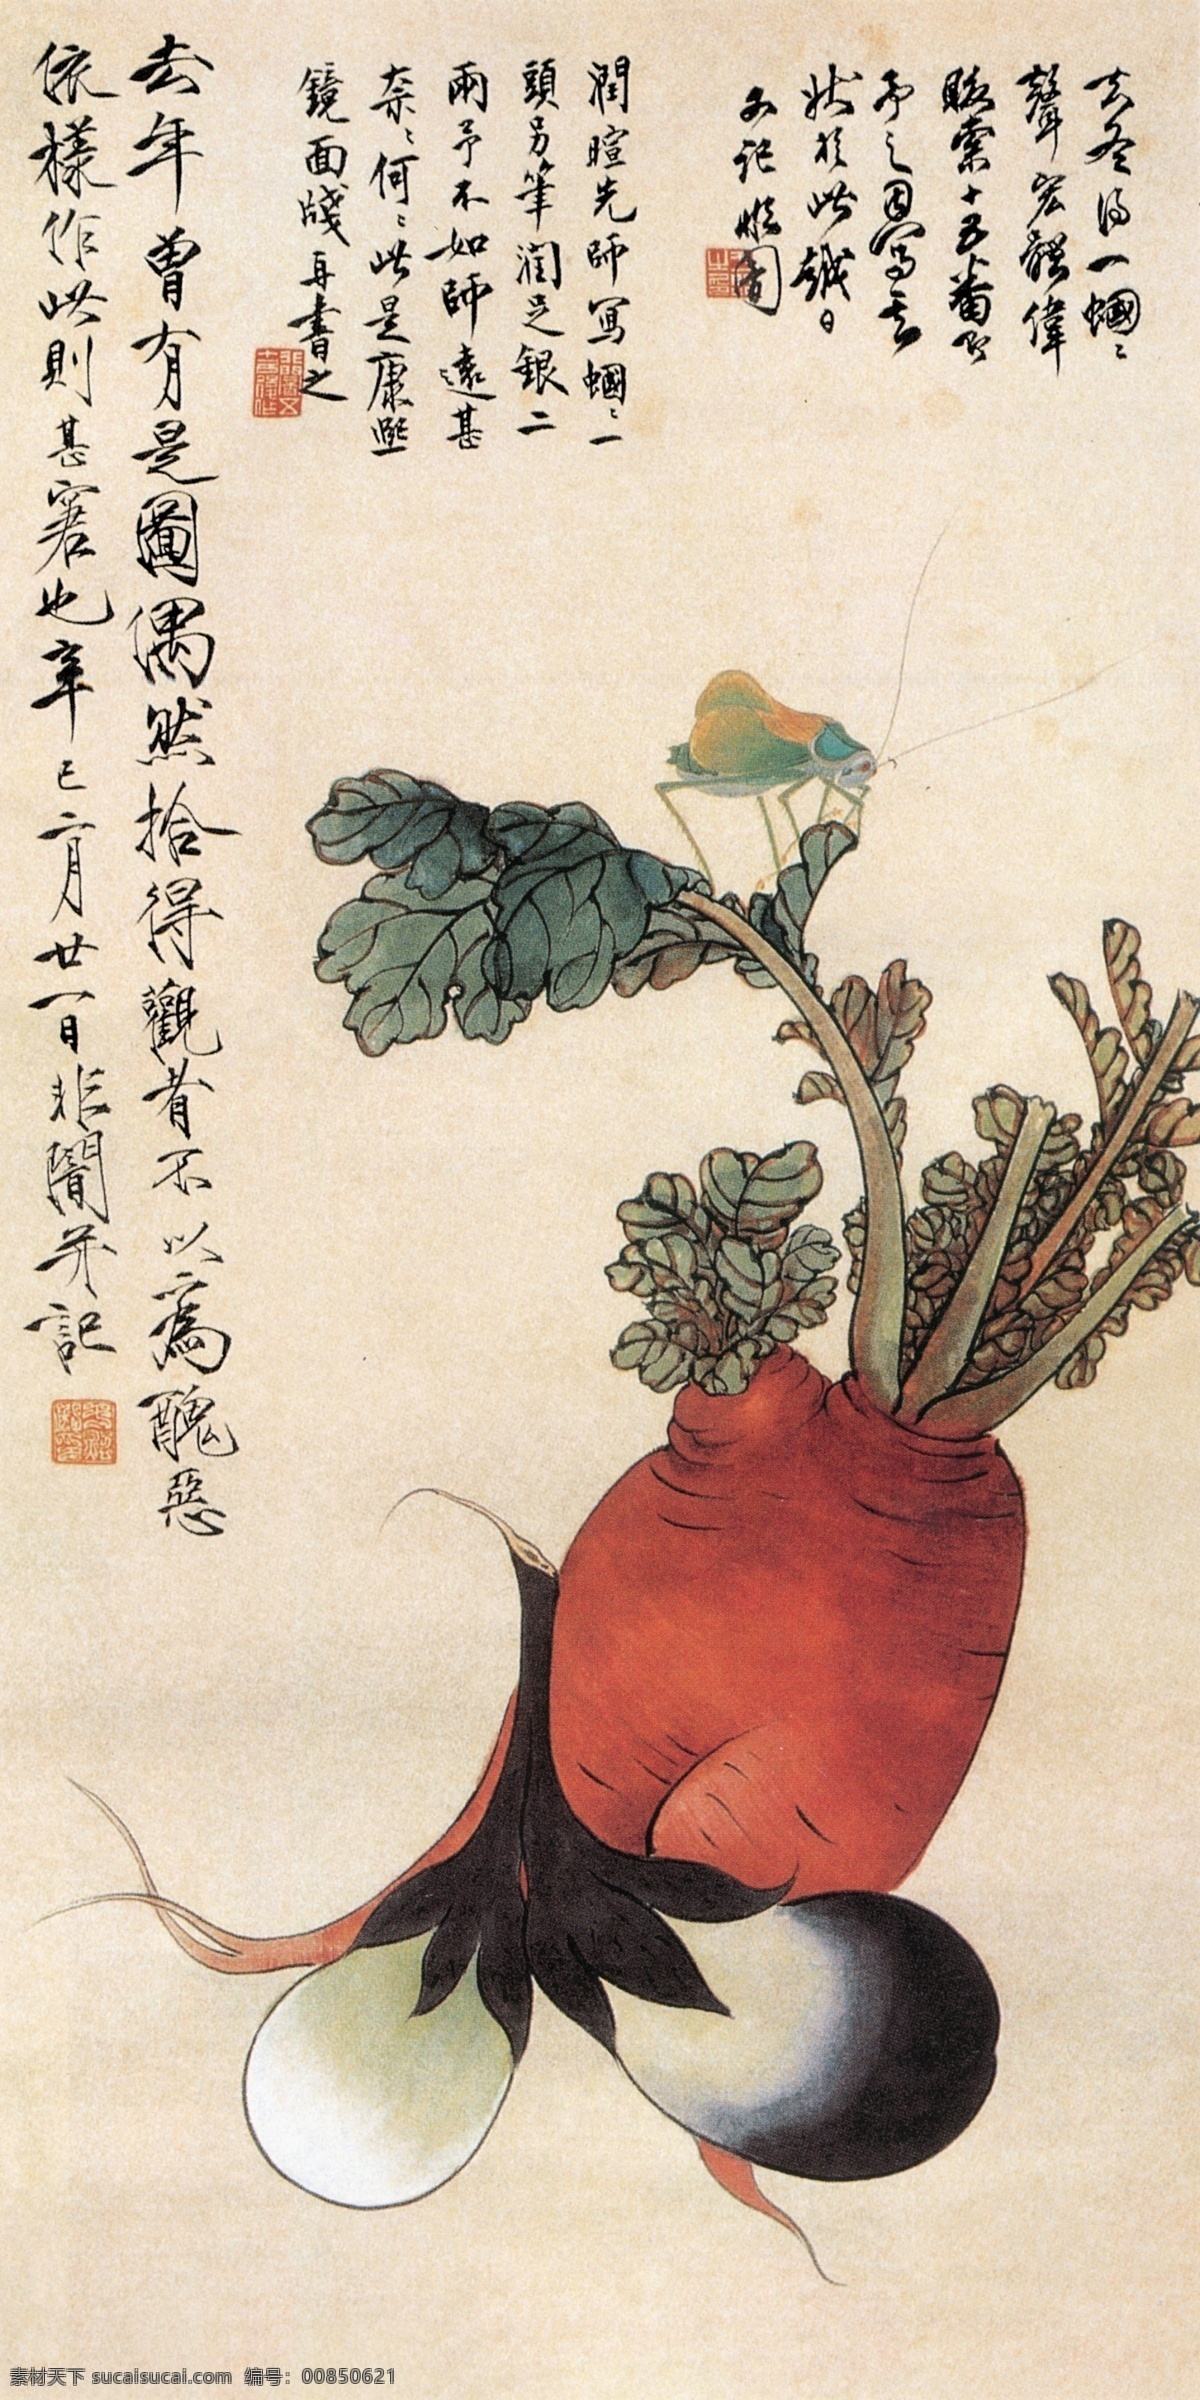 萝卜蝈蝈 萝卜 心里美 蝈蝈 茄子 蔬菜 工笔 于非闇 国画 绘画书法 文化艺术